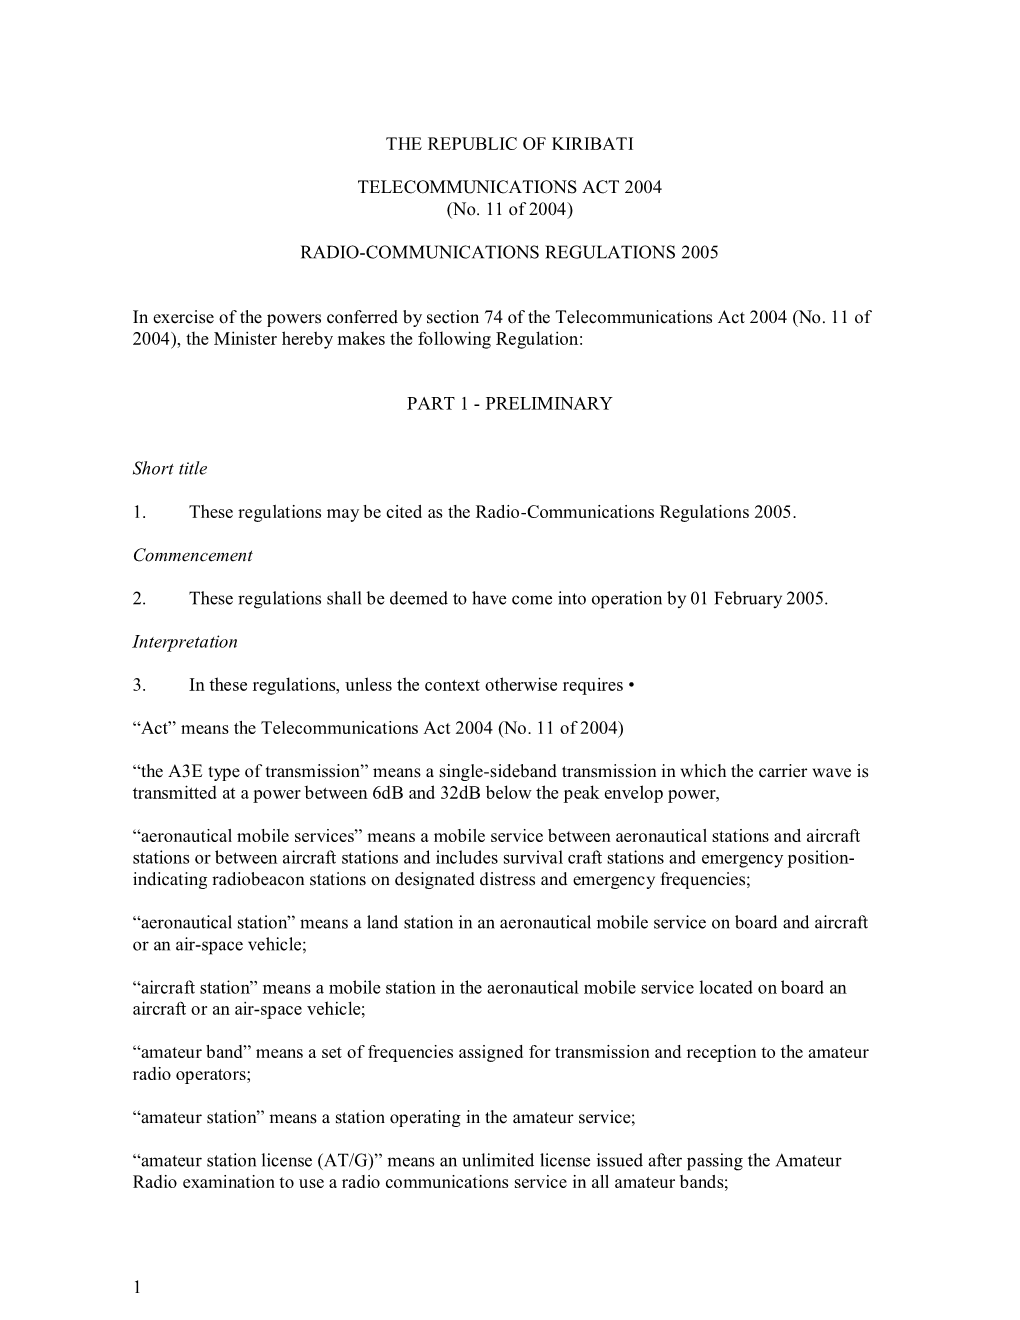 Radio-Communications Regulations 2005